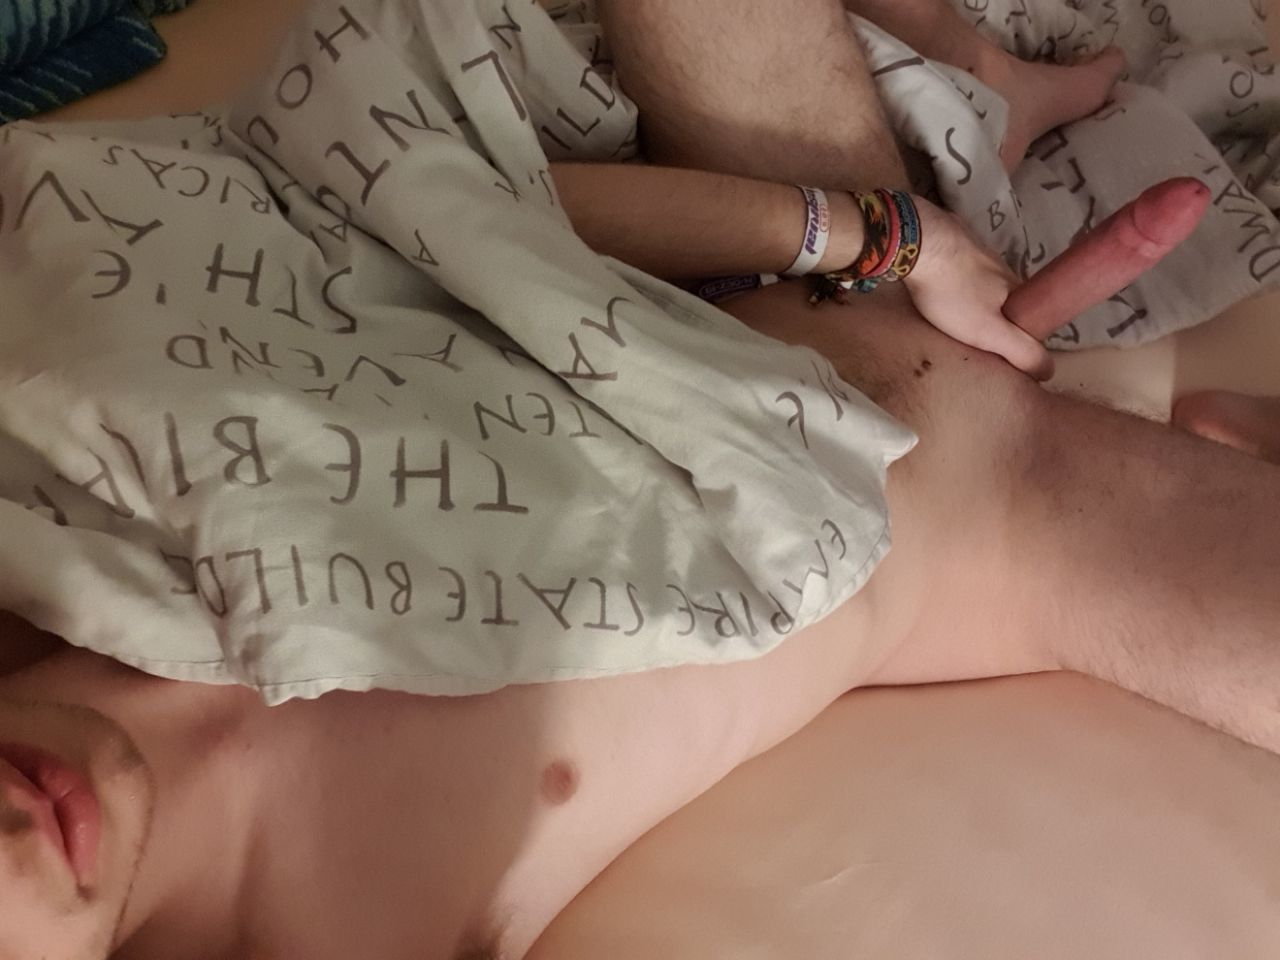 girlfriend caught on hidden camera masturbating tmb